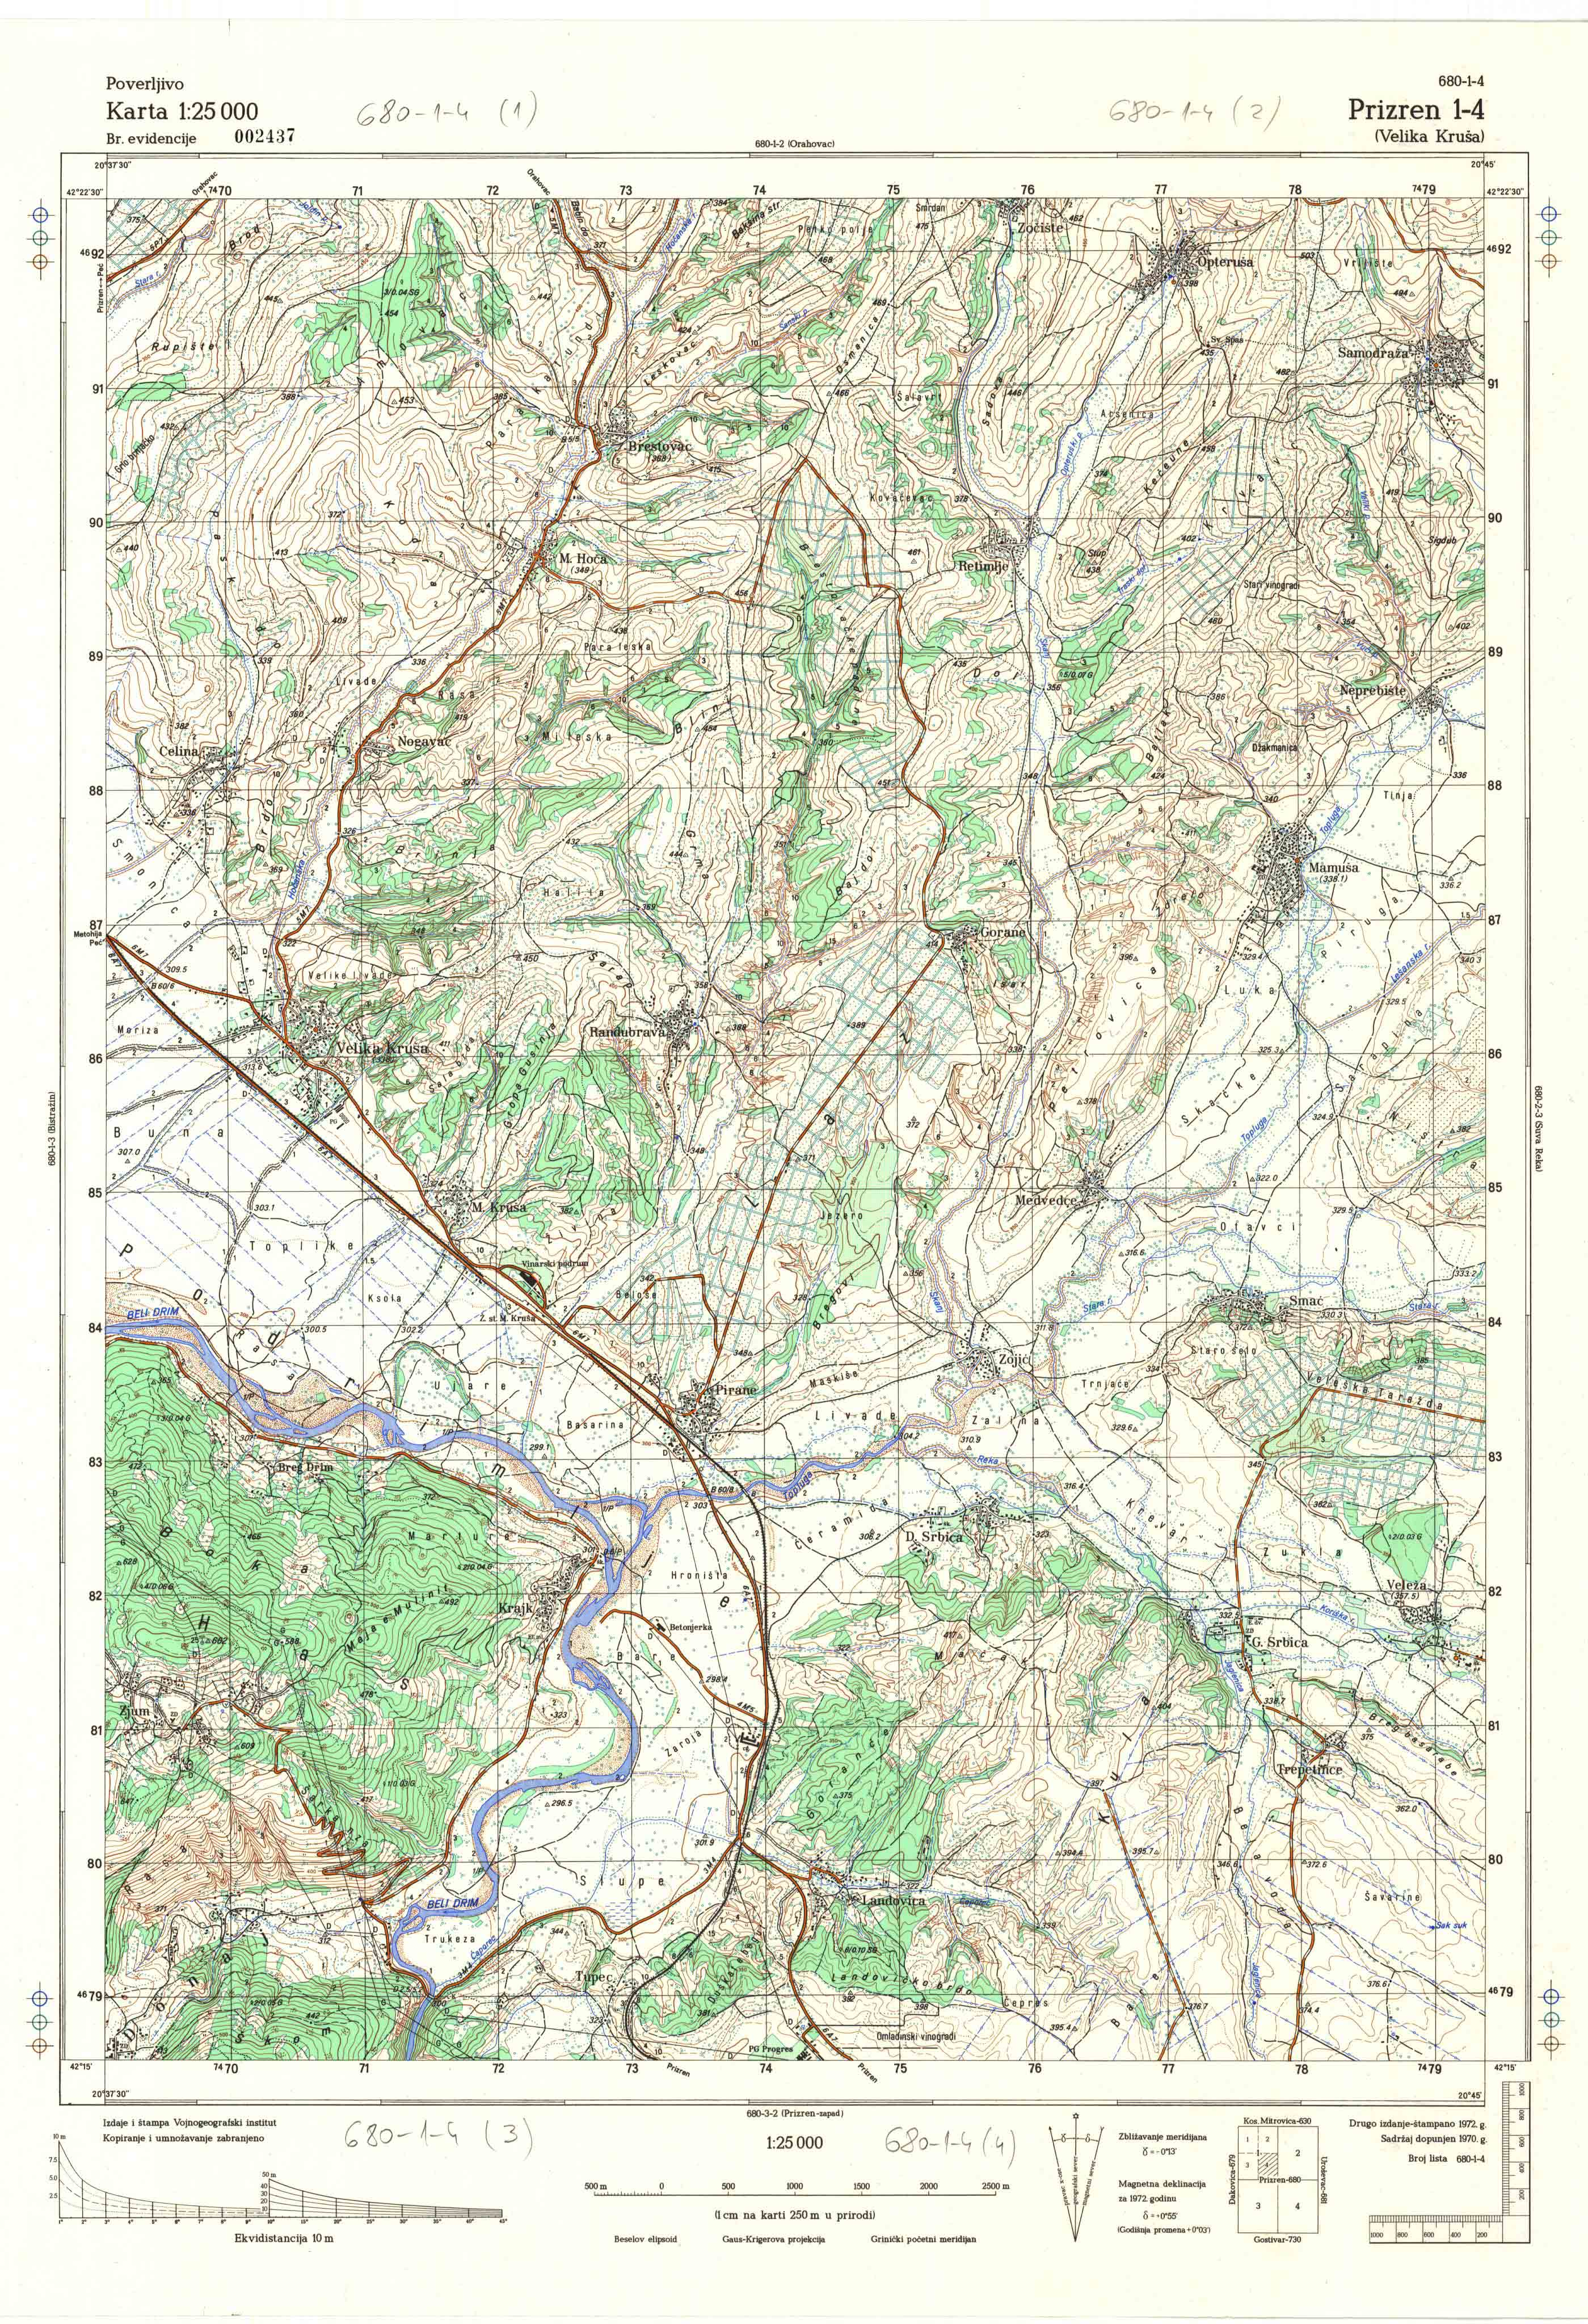  topografska karta Kosovo 25000 JNA  Prizren